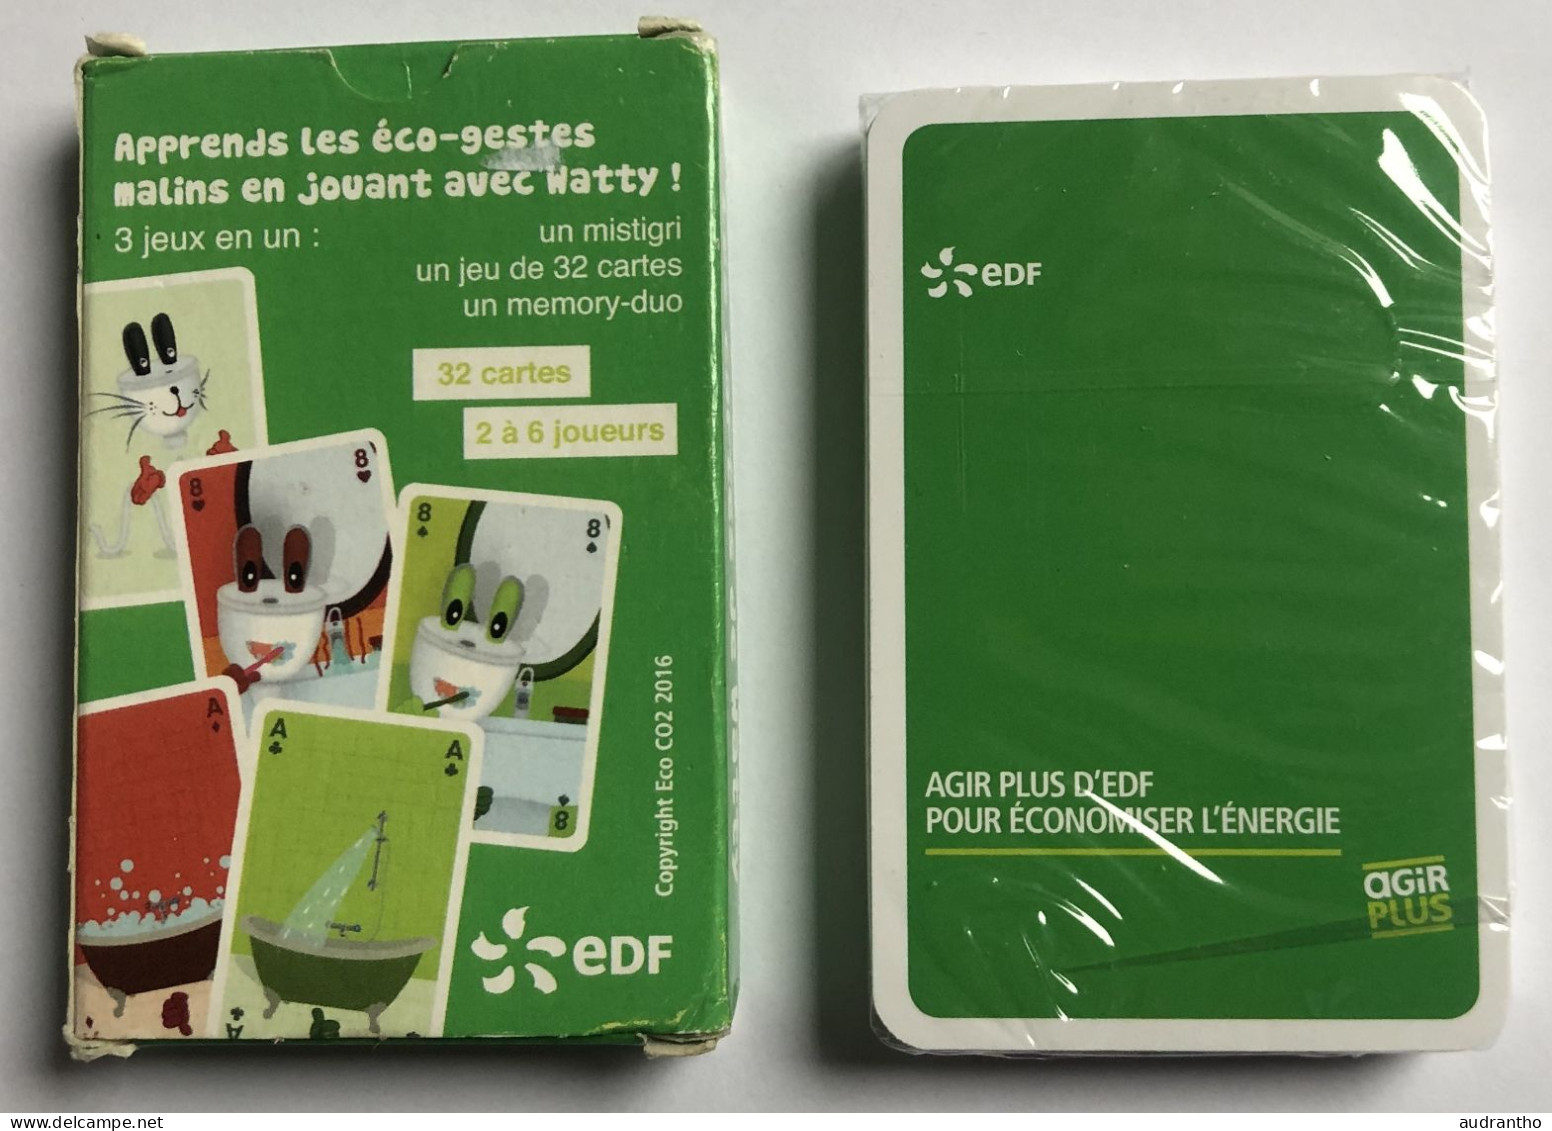 Jeu De 32 Cartes Publicitaire Rare EDF 2016 Les Cartes De Watty - Mistigri Et Memory-duo - Les éco-gestes - 32 Karten